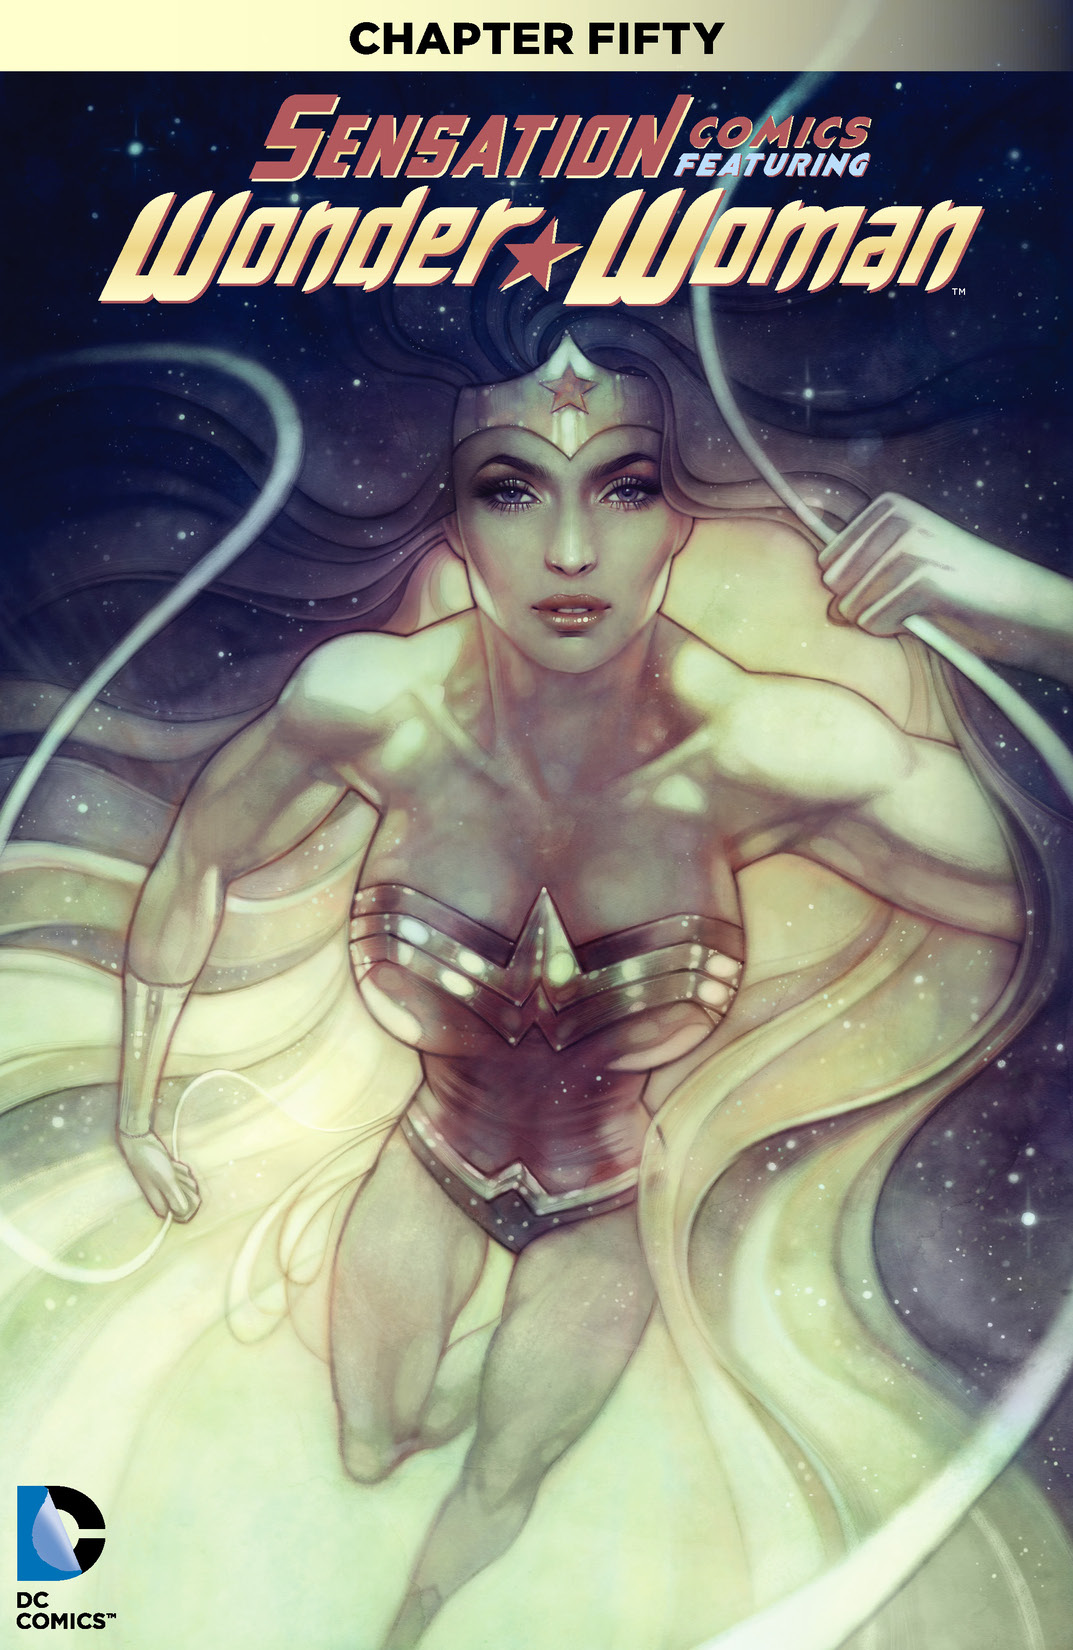 Sensation Comics Featuring Wonder Woman #50 preview images